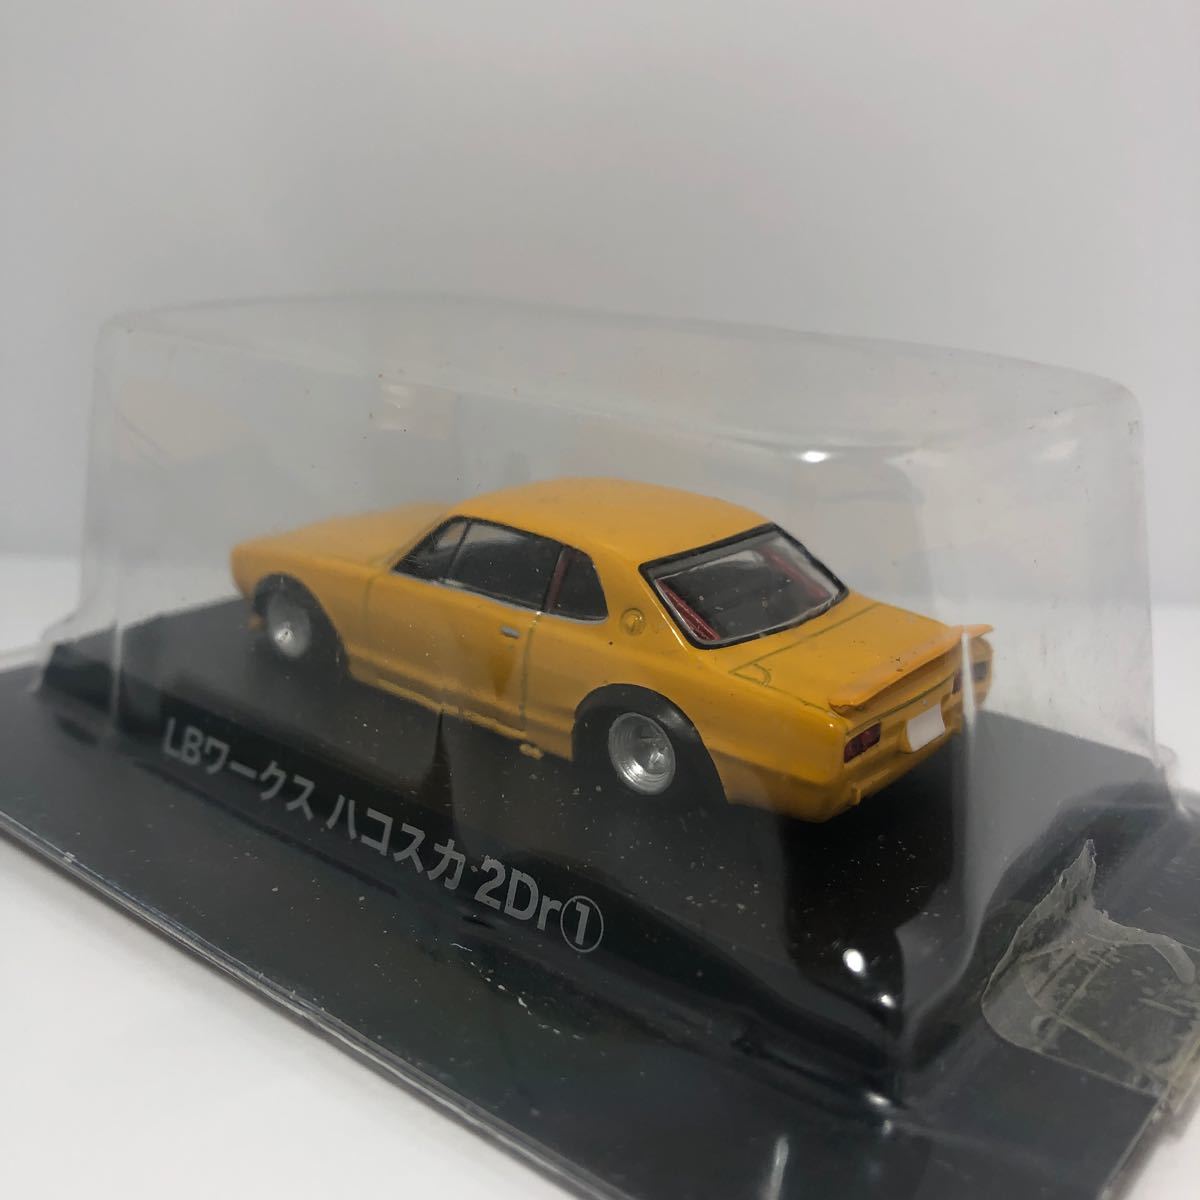  with translation Aoshima gla tea n collection no. 13.LB Works Hakosuka 2Dr (2) yellow 1/64 1971 year GC10 Nissan Skyline Hakoska 